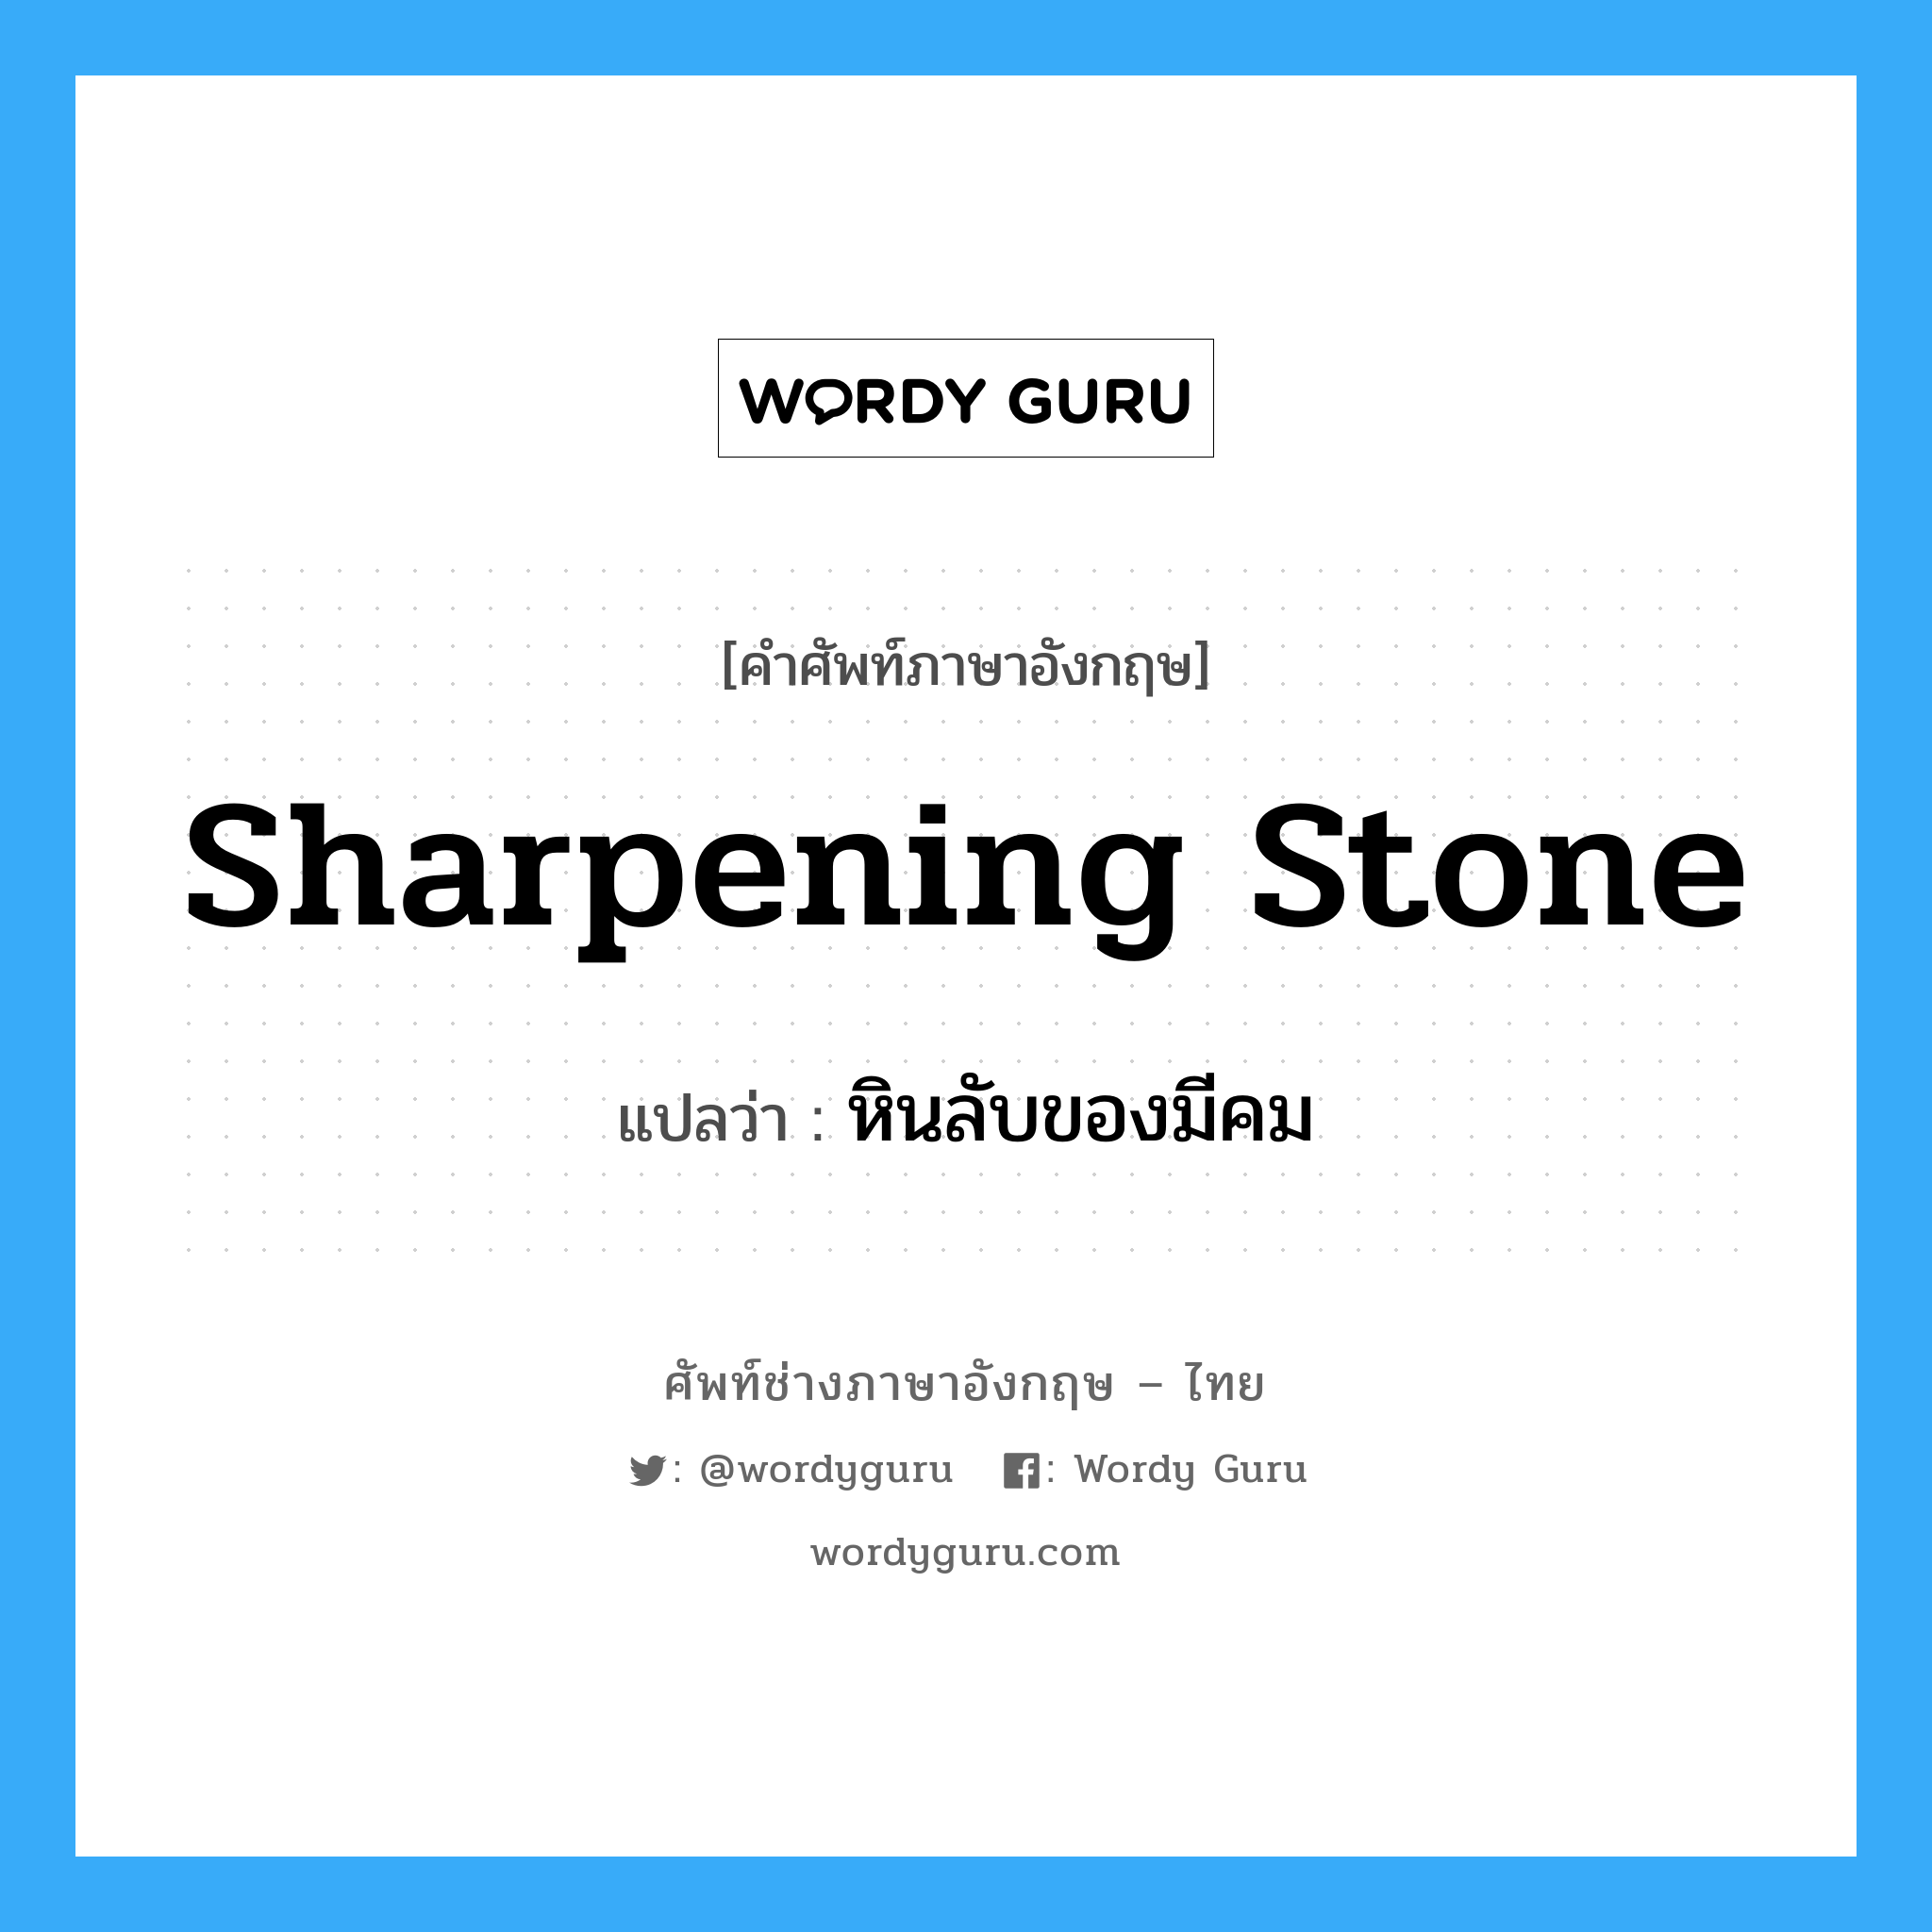 หินลับของมีคม ภาษาอังกฤษ?, คำศัพท์ช่างภาษาอังกฤษ - ไทย หินลับของมีคม คำศัพท์ภาษาอังกฤษ หินลับของมีคม แปลว่า sharpening stone